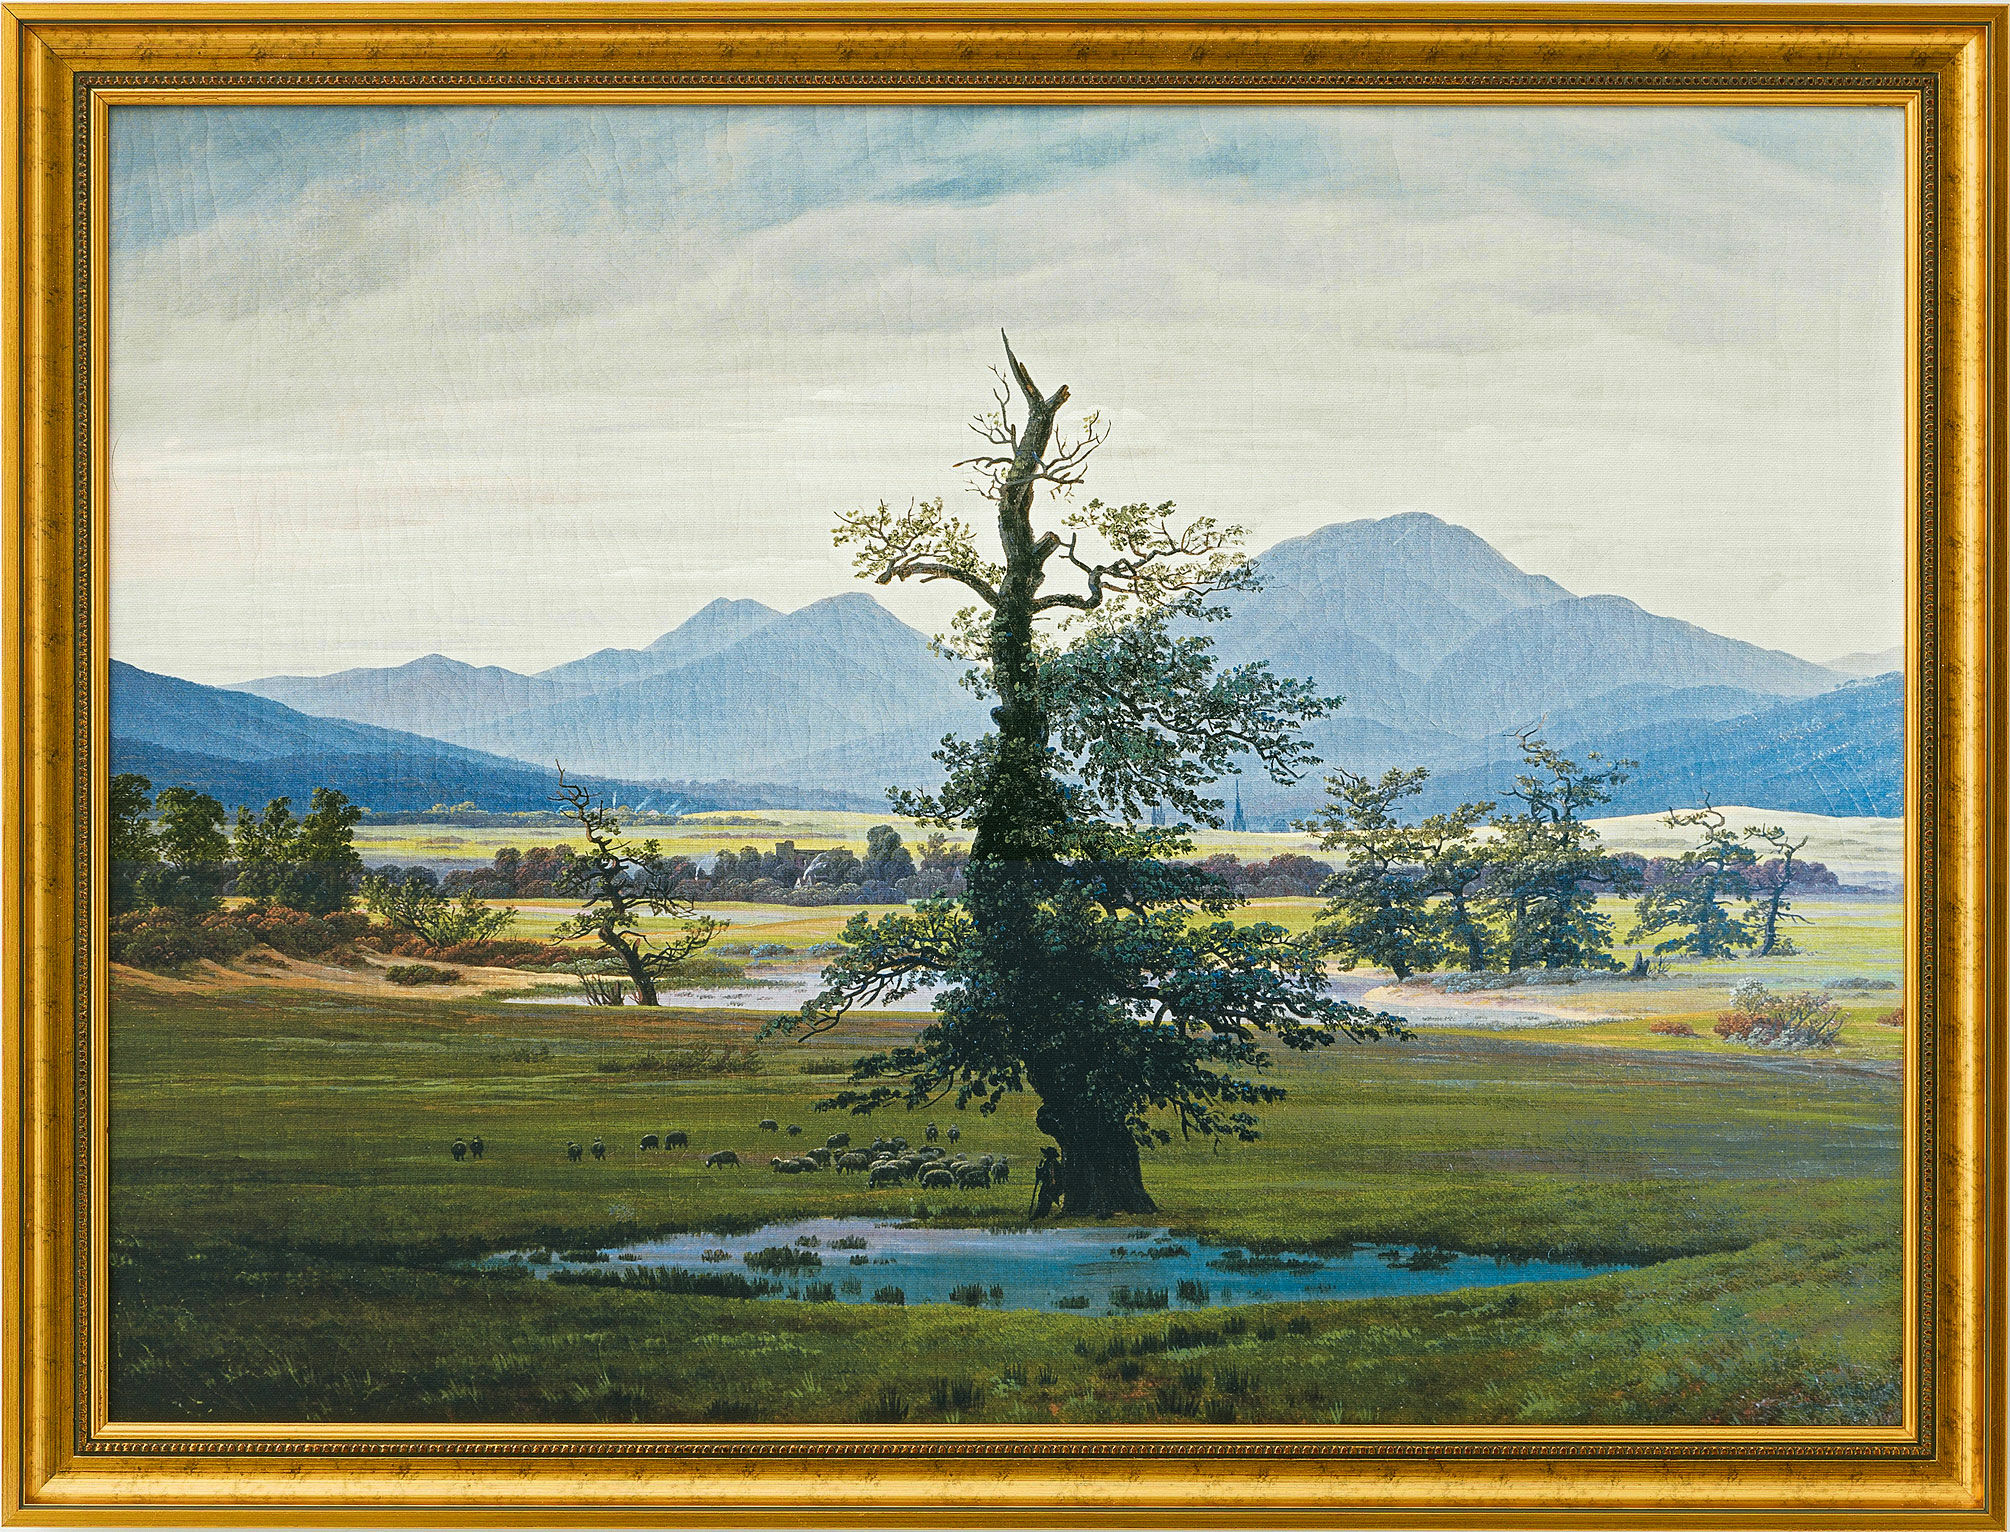 Beeld "De eenzame boom" (1822), ingelijst von Caspar David Friedrich